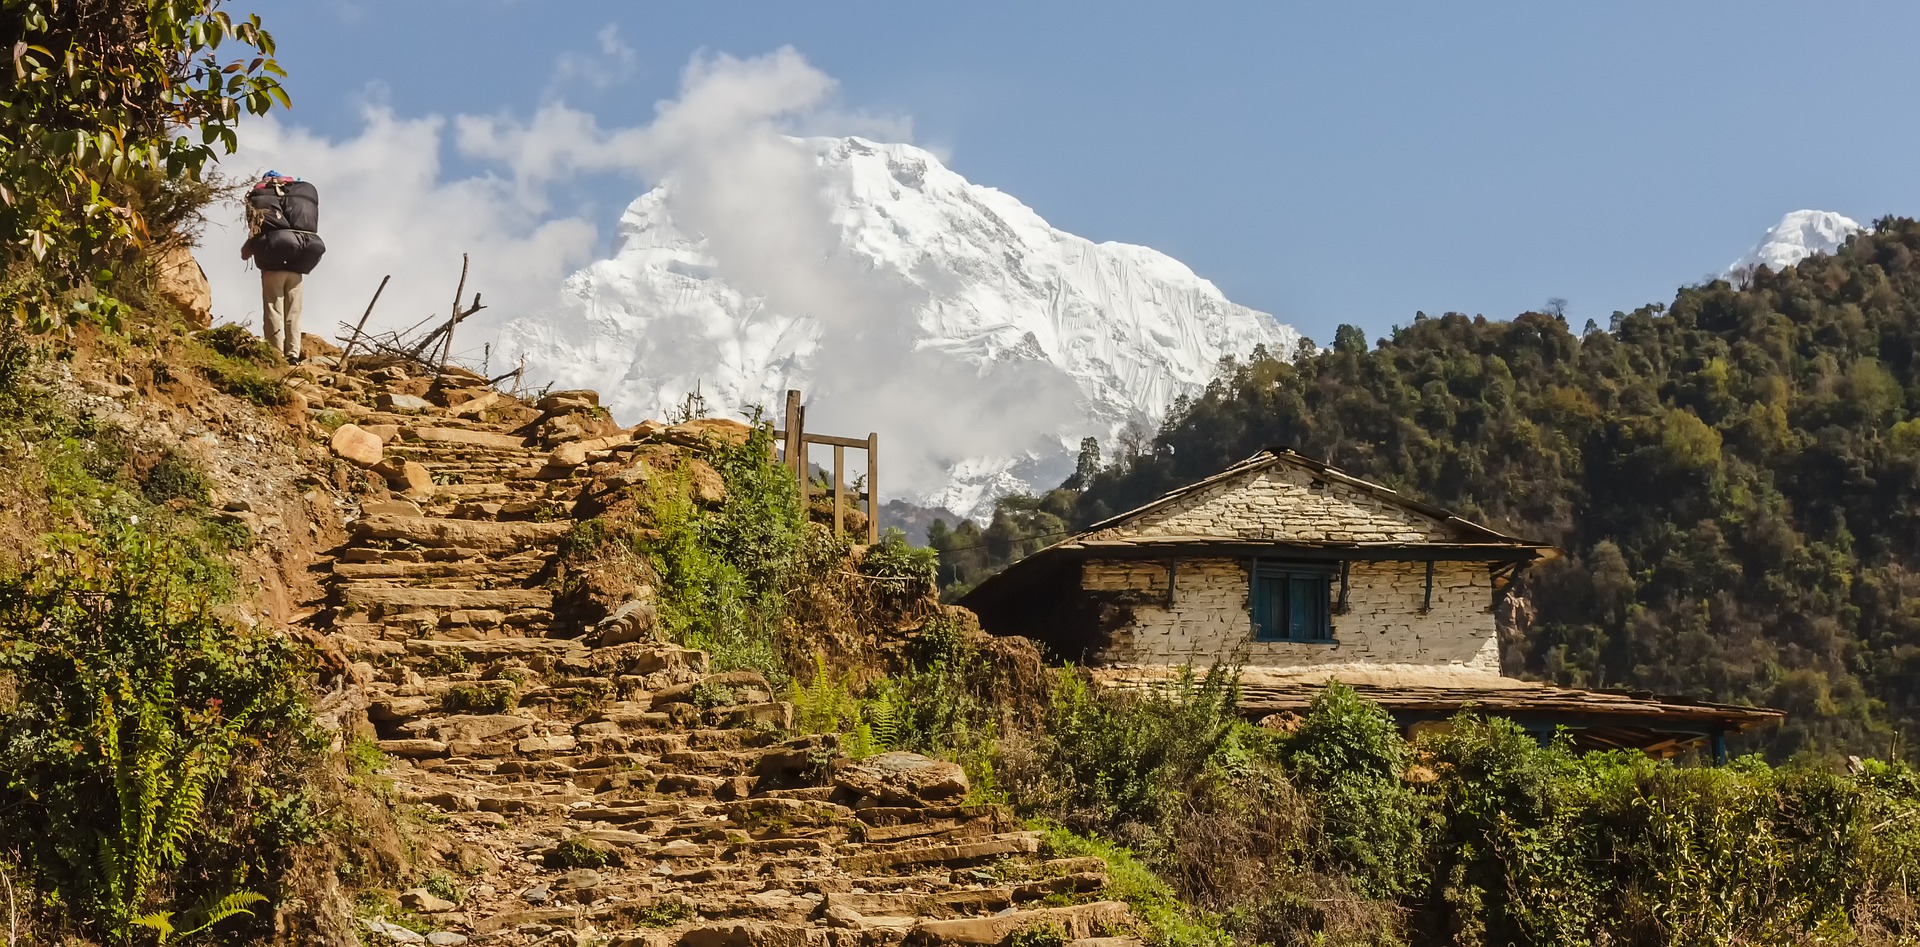 Top Adventure Activities to do in Nepal